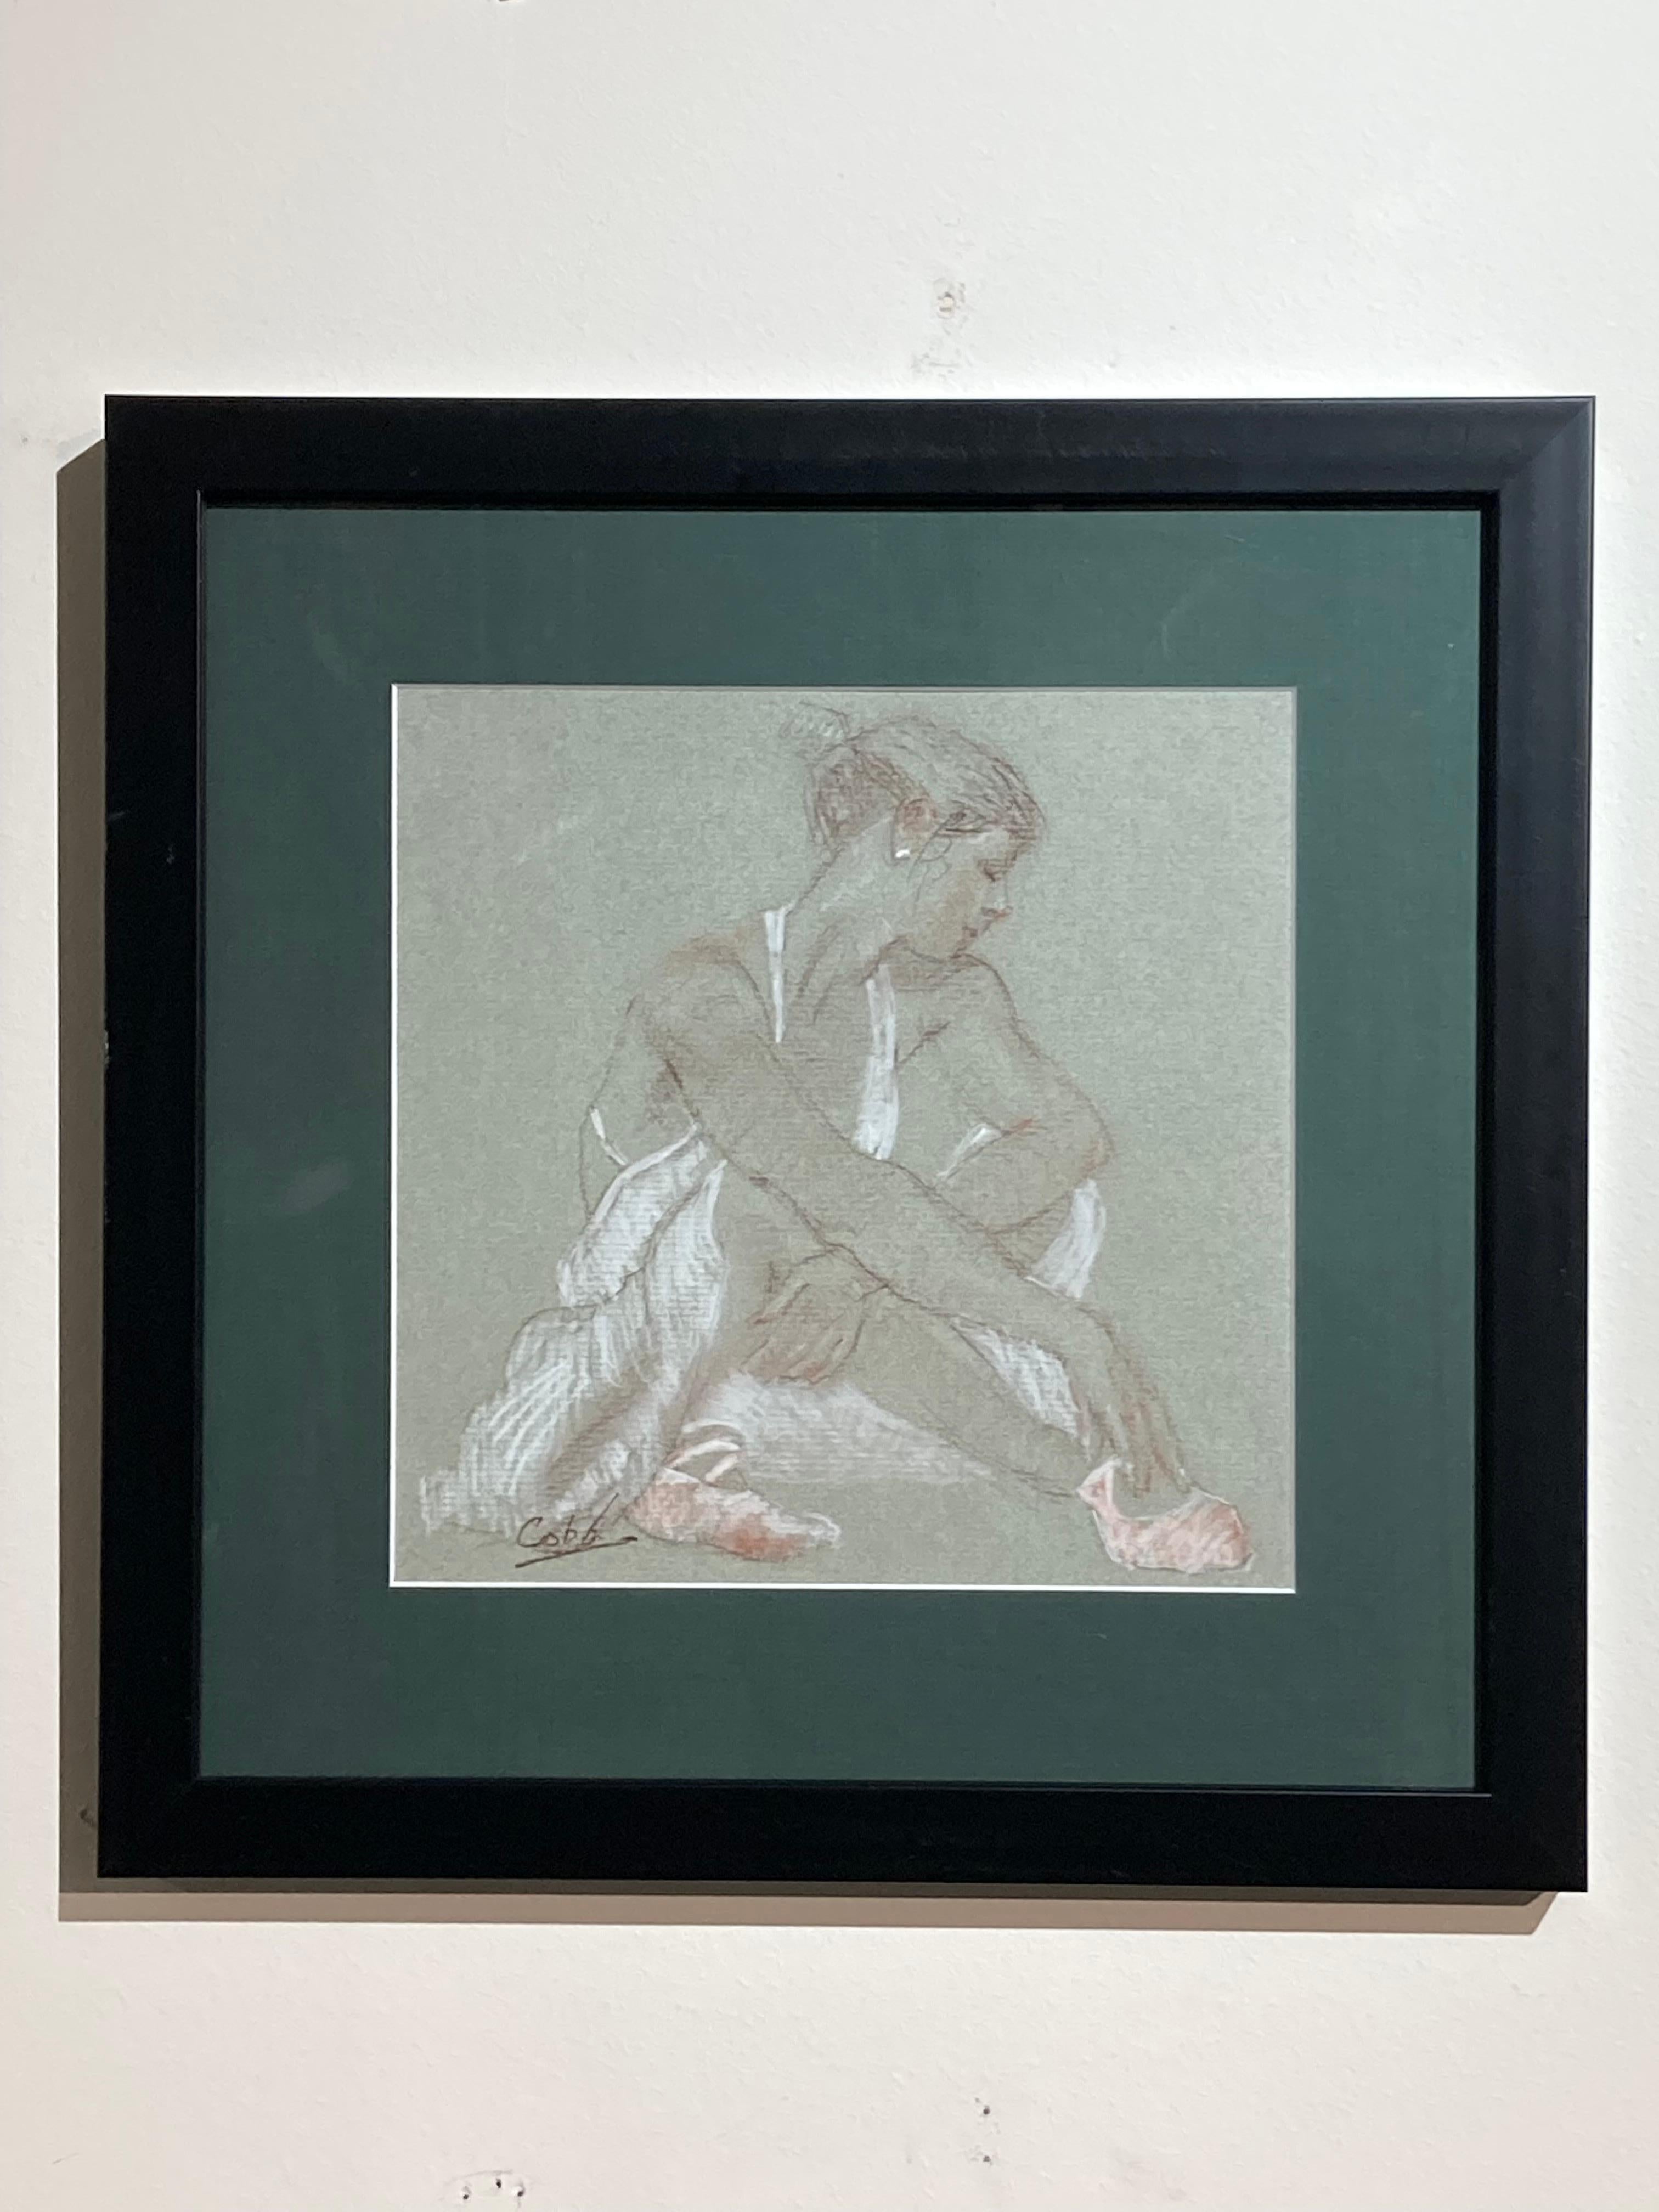 Diese gerahmte 13,5" x 13,5" große Kohle- und Konterzeichnung des Künstlers James Cobb zeigt eine Ballerina in einer sitzenden, entspannten Pose. Die Arbeit ist auf  getöntes graues Zeichenpapier hinter einem dunklen Salbei-Passepartout in einem